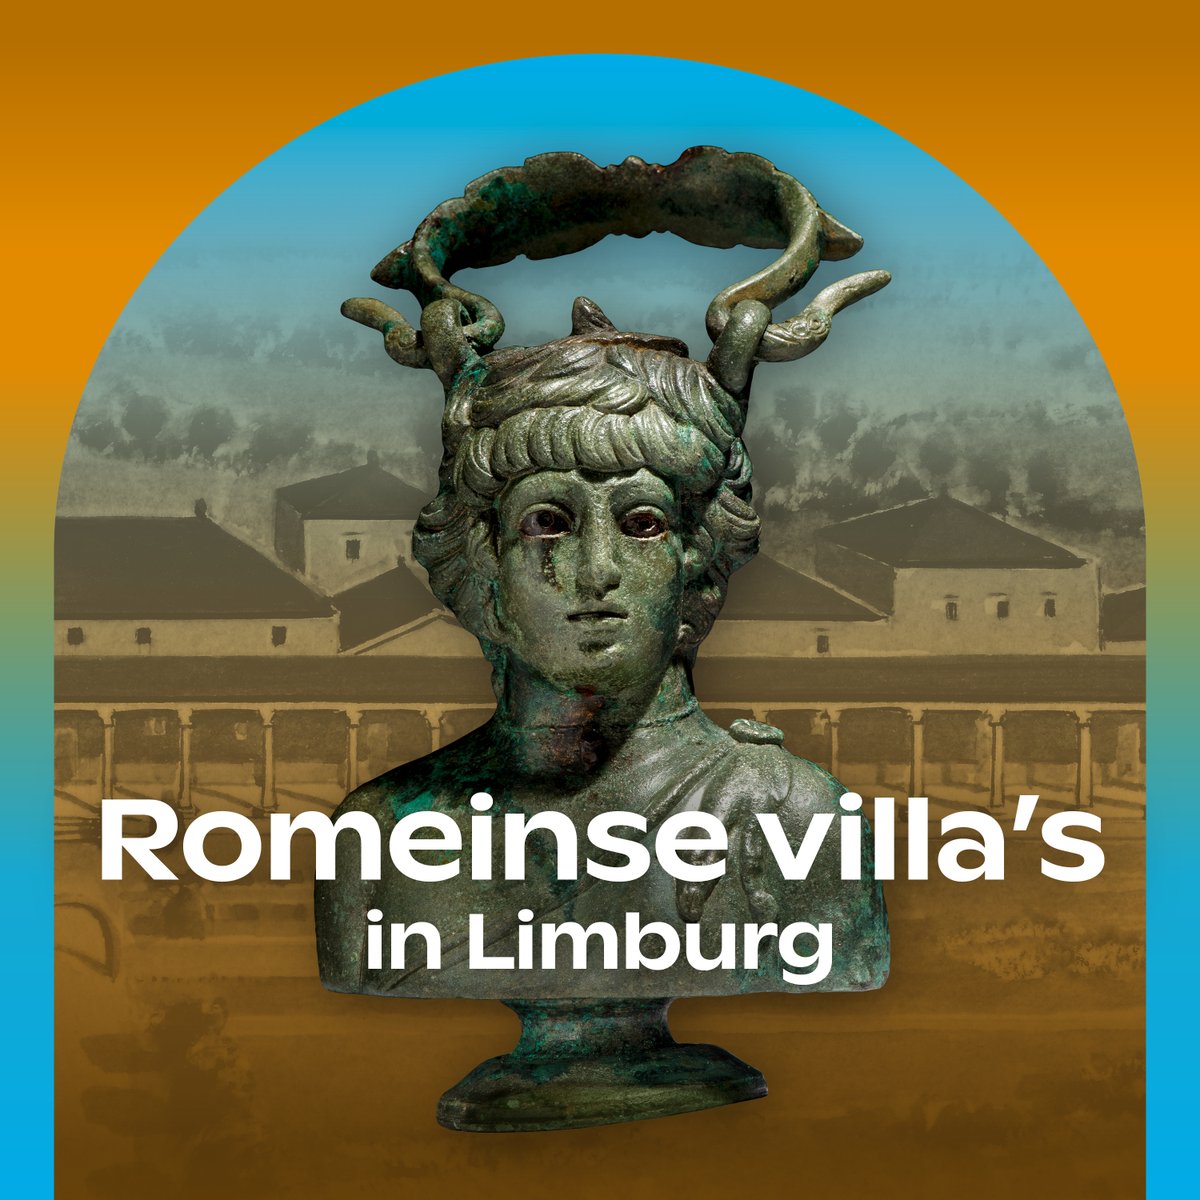 Vanaf 25 april is tentoonstelling ‘Romeinse villa’s in Limburg’ te zien in @RM_Oudheden! 🙌 De tentoonstelling neemt je mee in het luxe landleven van Limburg in de Romeinse tijd, met ruim 200 archeologische vondsten. ⛏️ Nieuwsgierig? Klik hier 👉 visitleiden.nl/nl/agenda/1056…